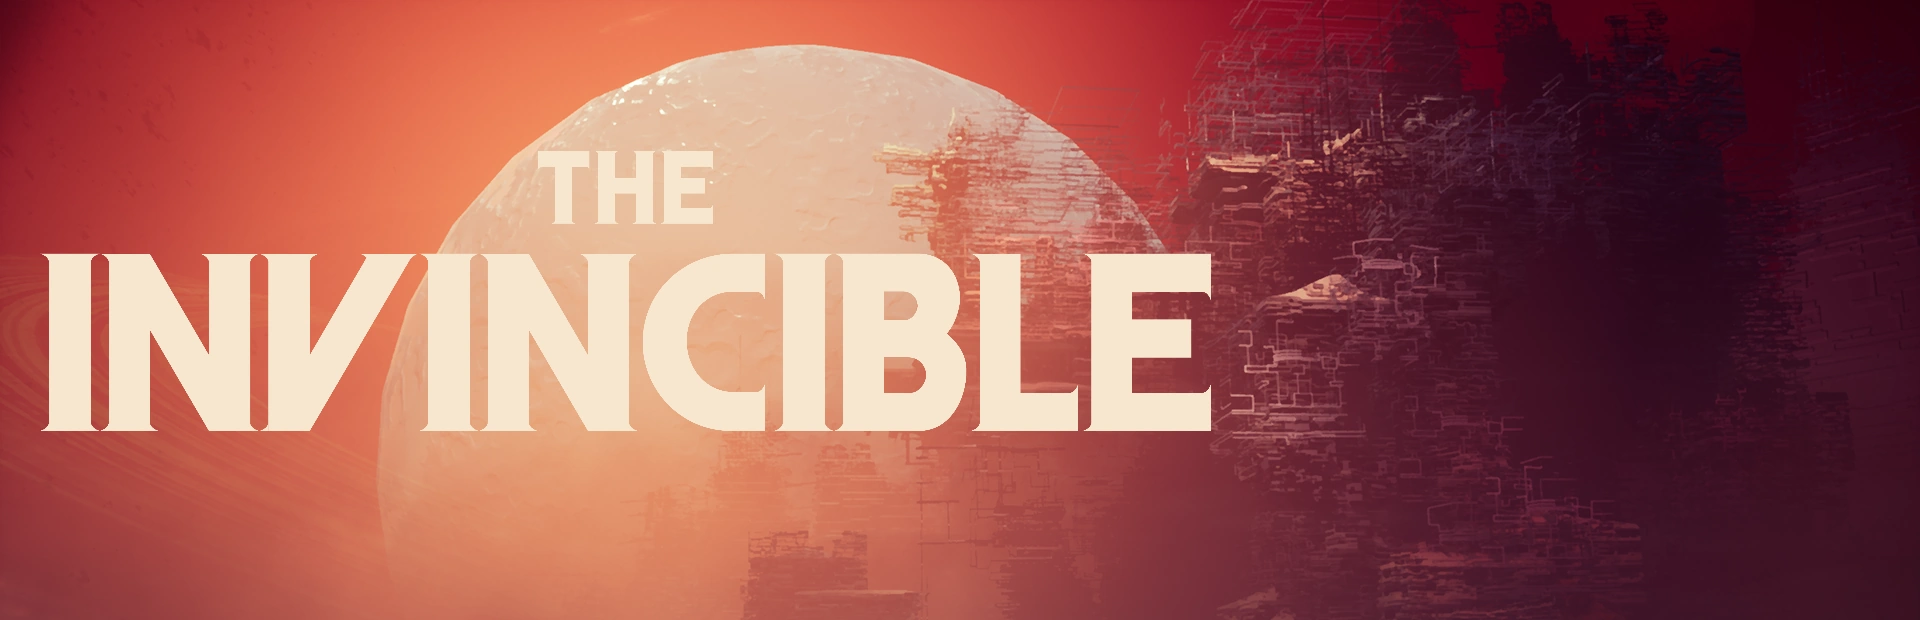 دانلود The Invincible برای کامپیوتر | گیمباتو